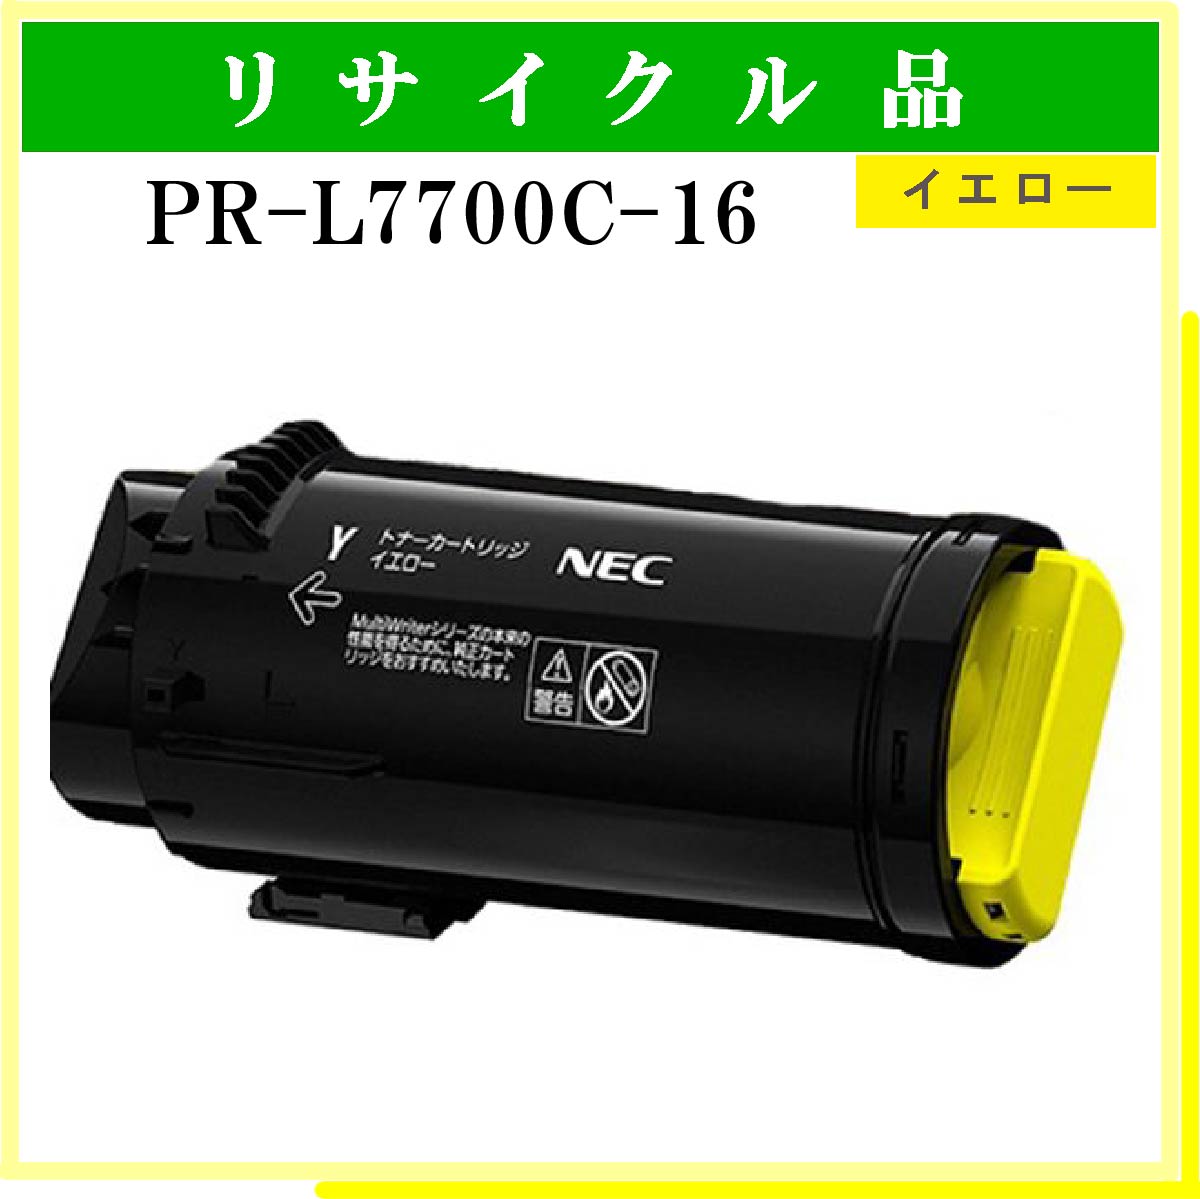 PR-L7700C-16